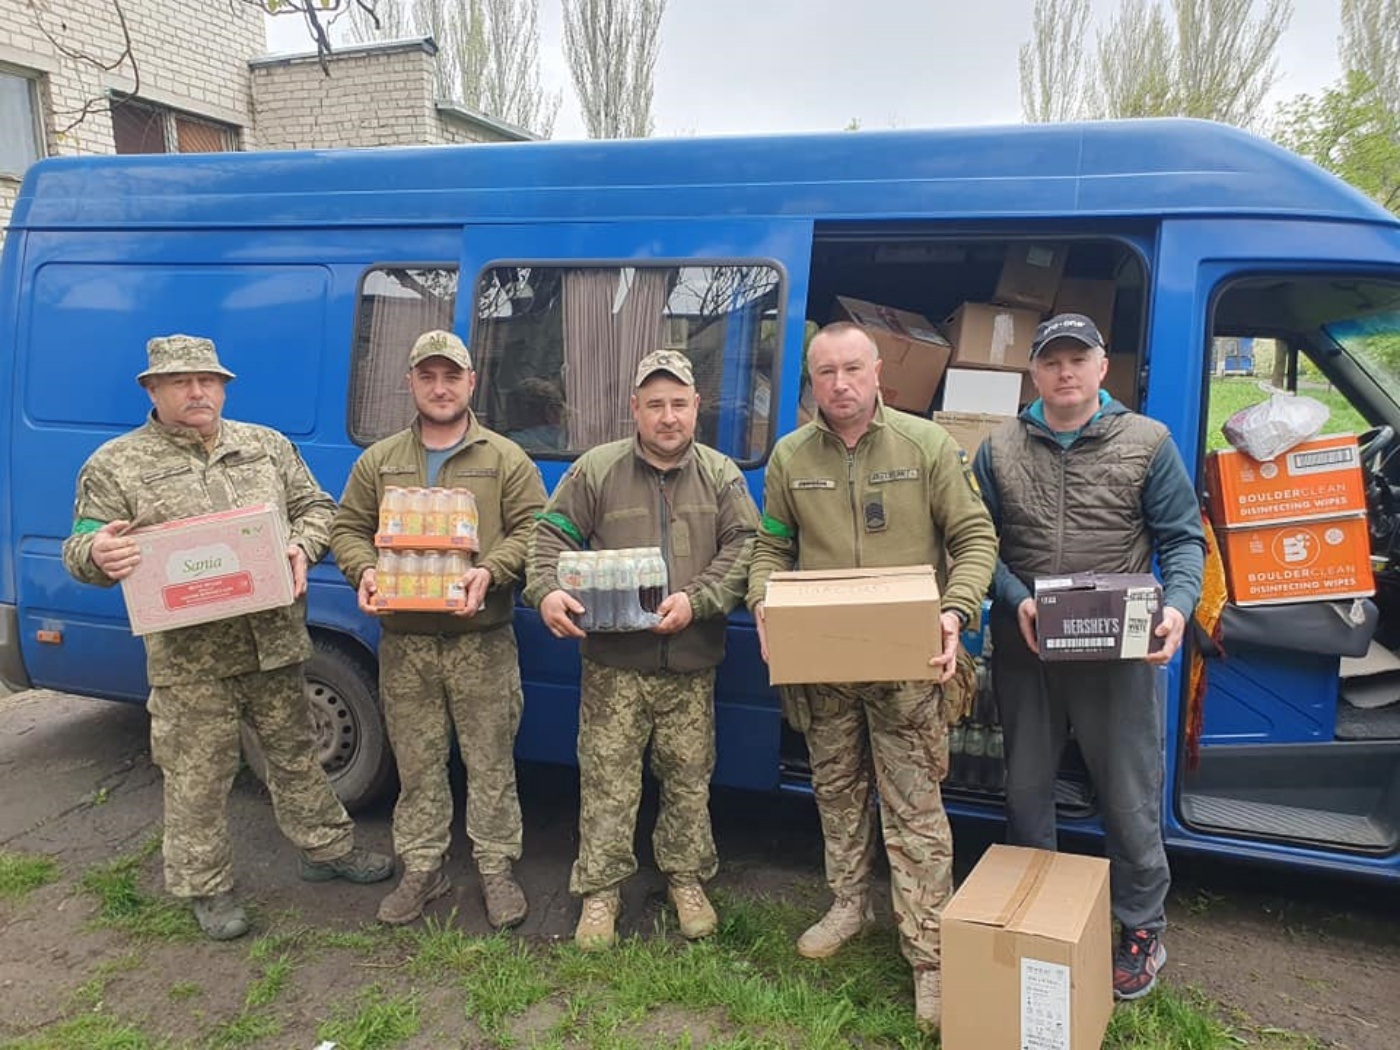 Z Chorzowa do Bachmutu Pomoc dla Ukrainy trwa 5